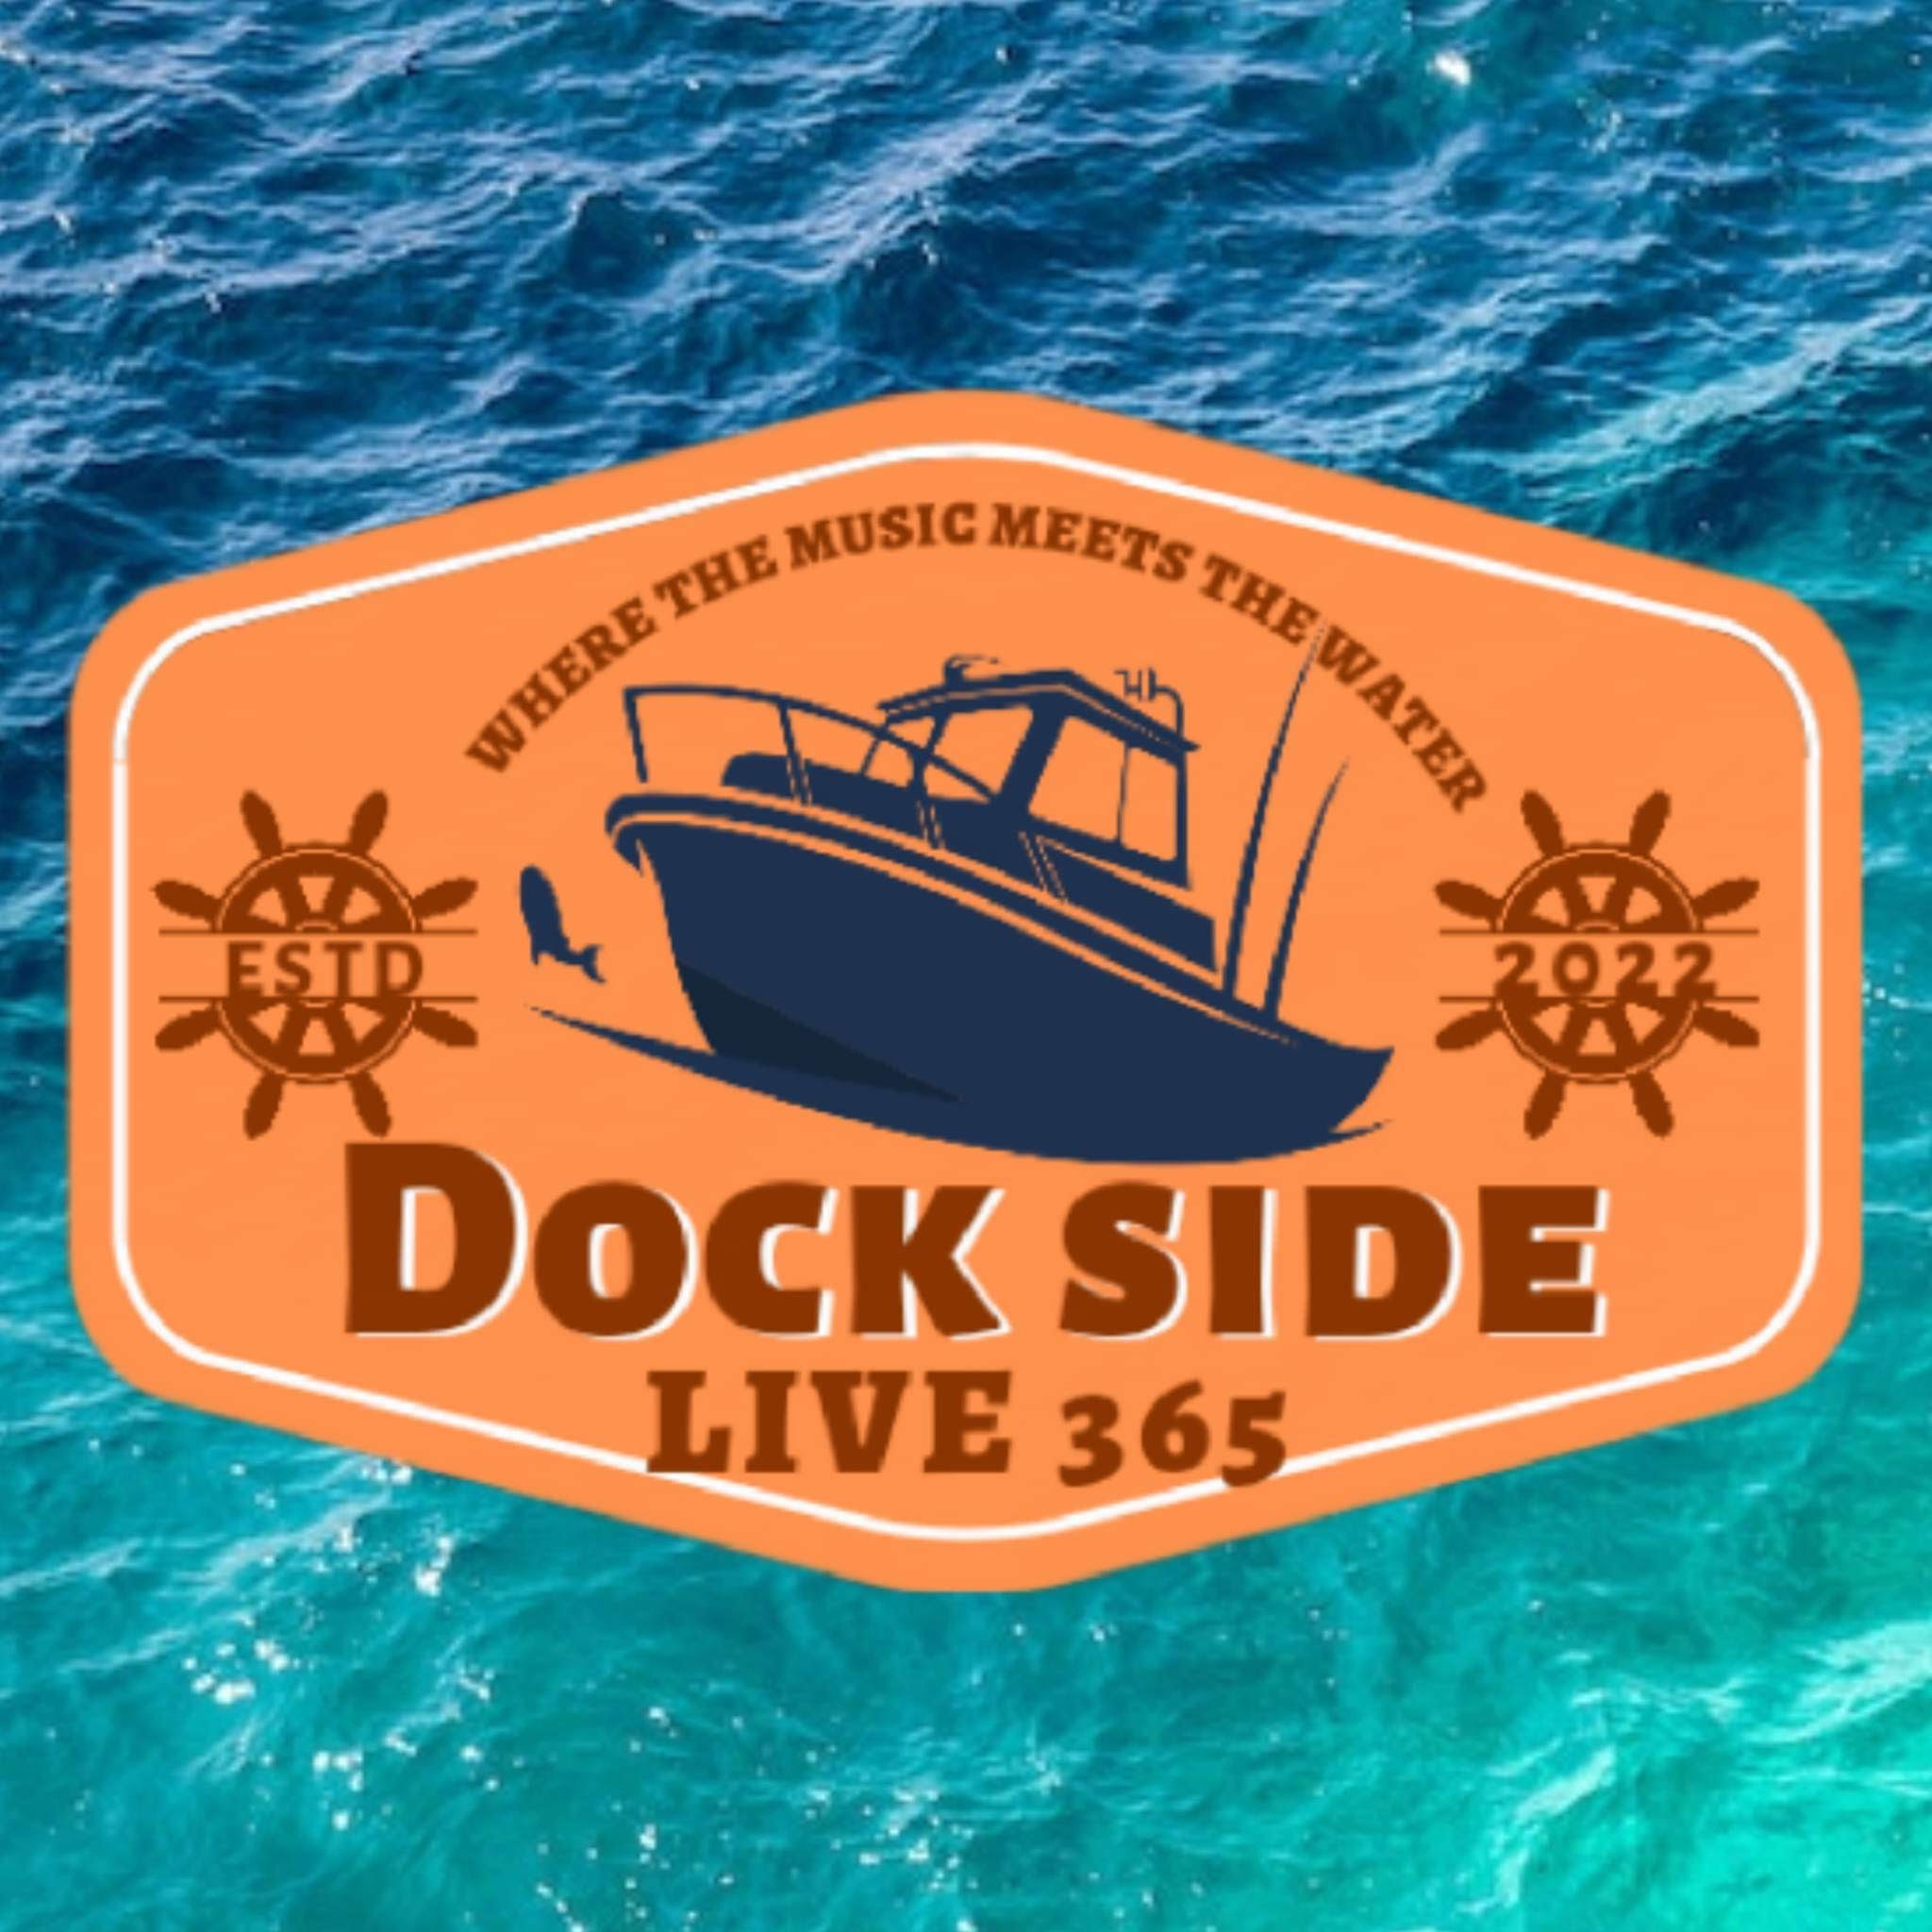 Art for Dock Side Live365 by Johnny Russler